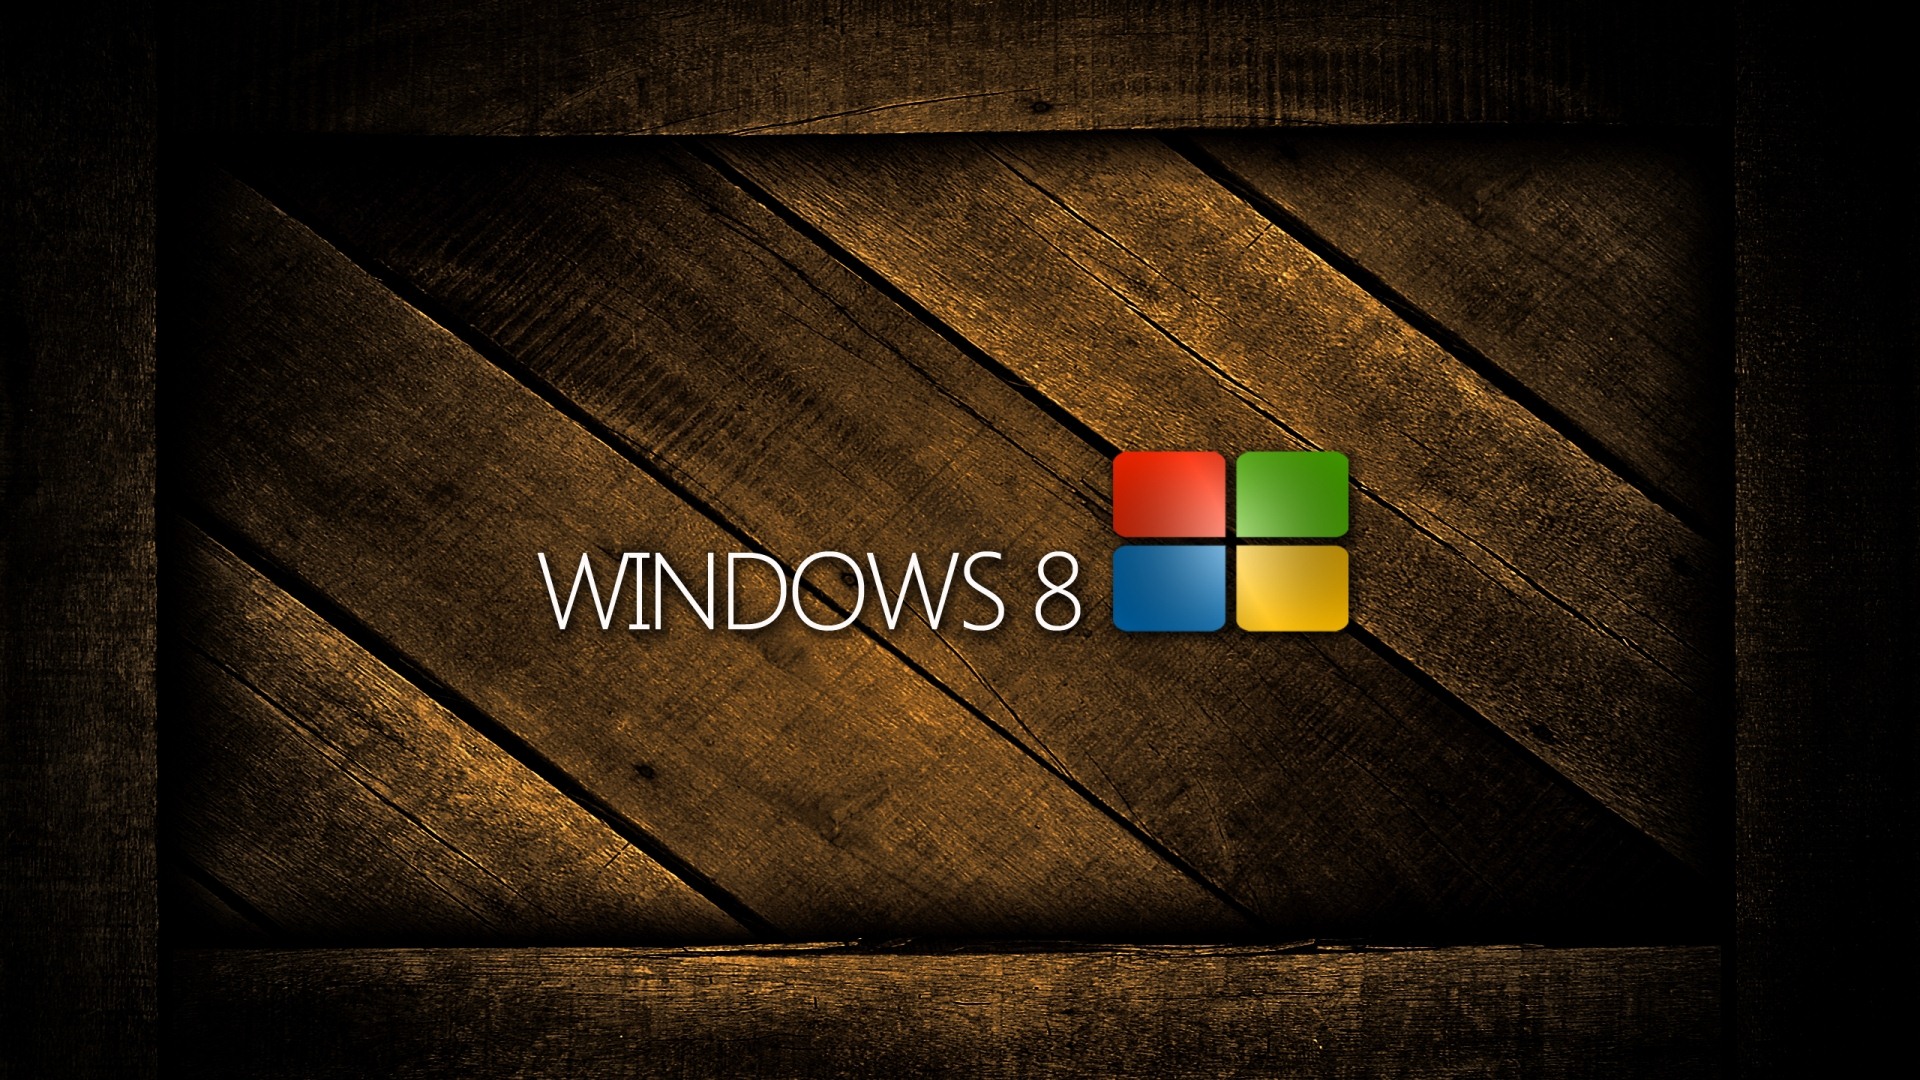 Fond d'écran Windows 8 Theme (2) #19 - 1920x1080